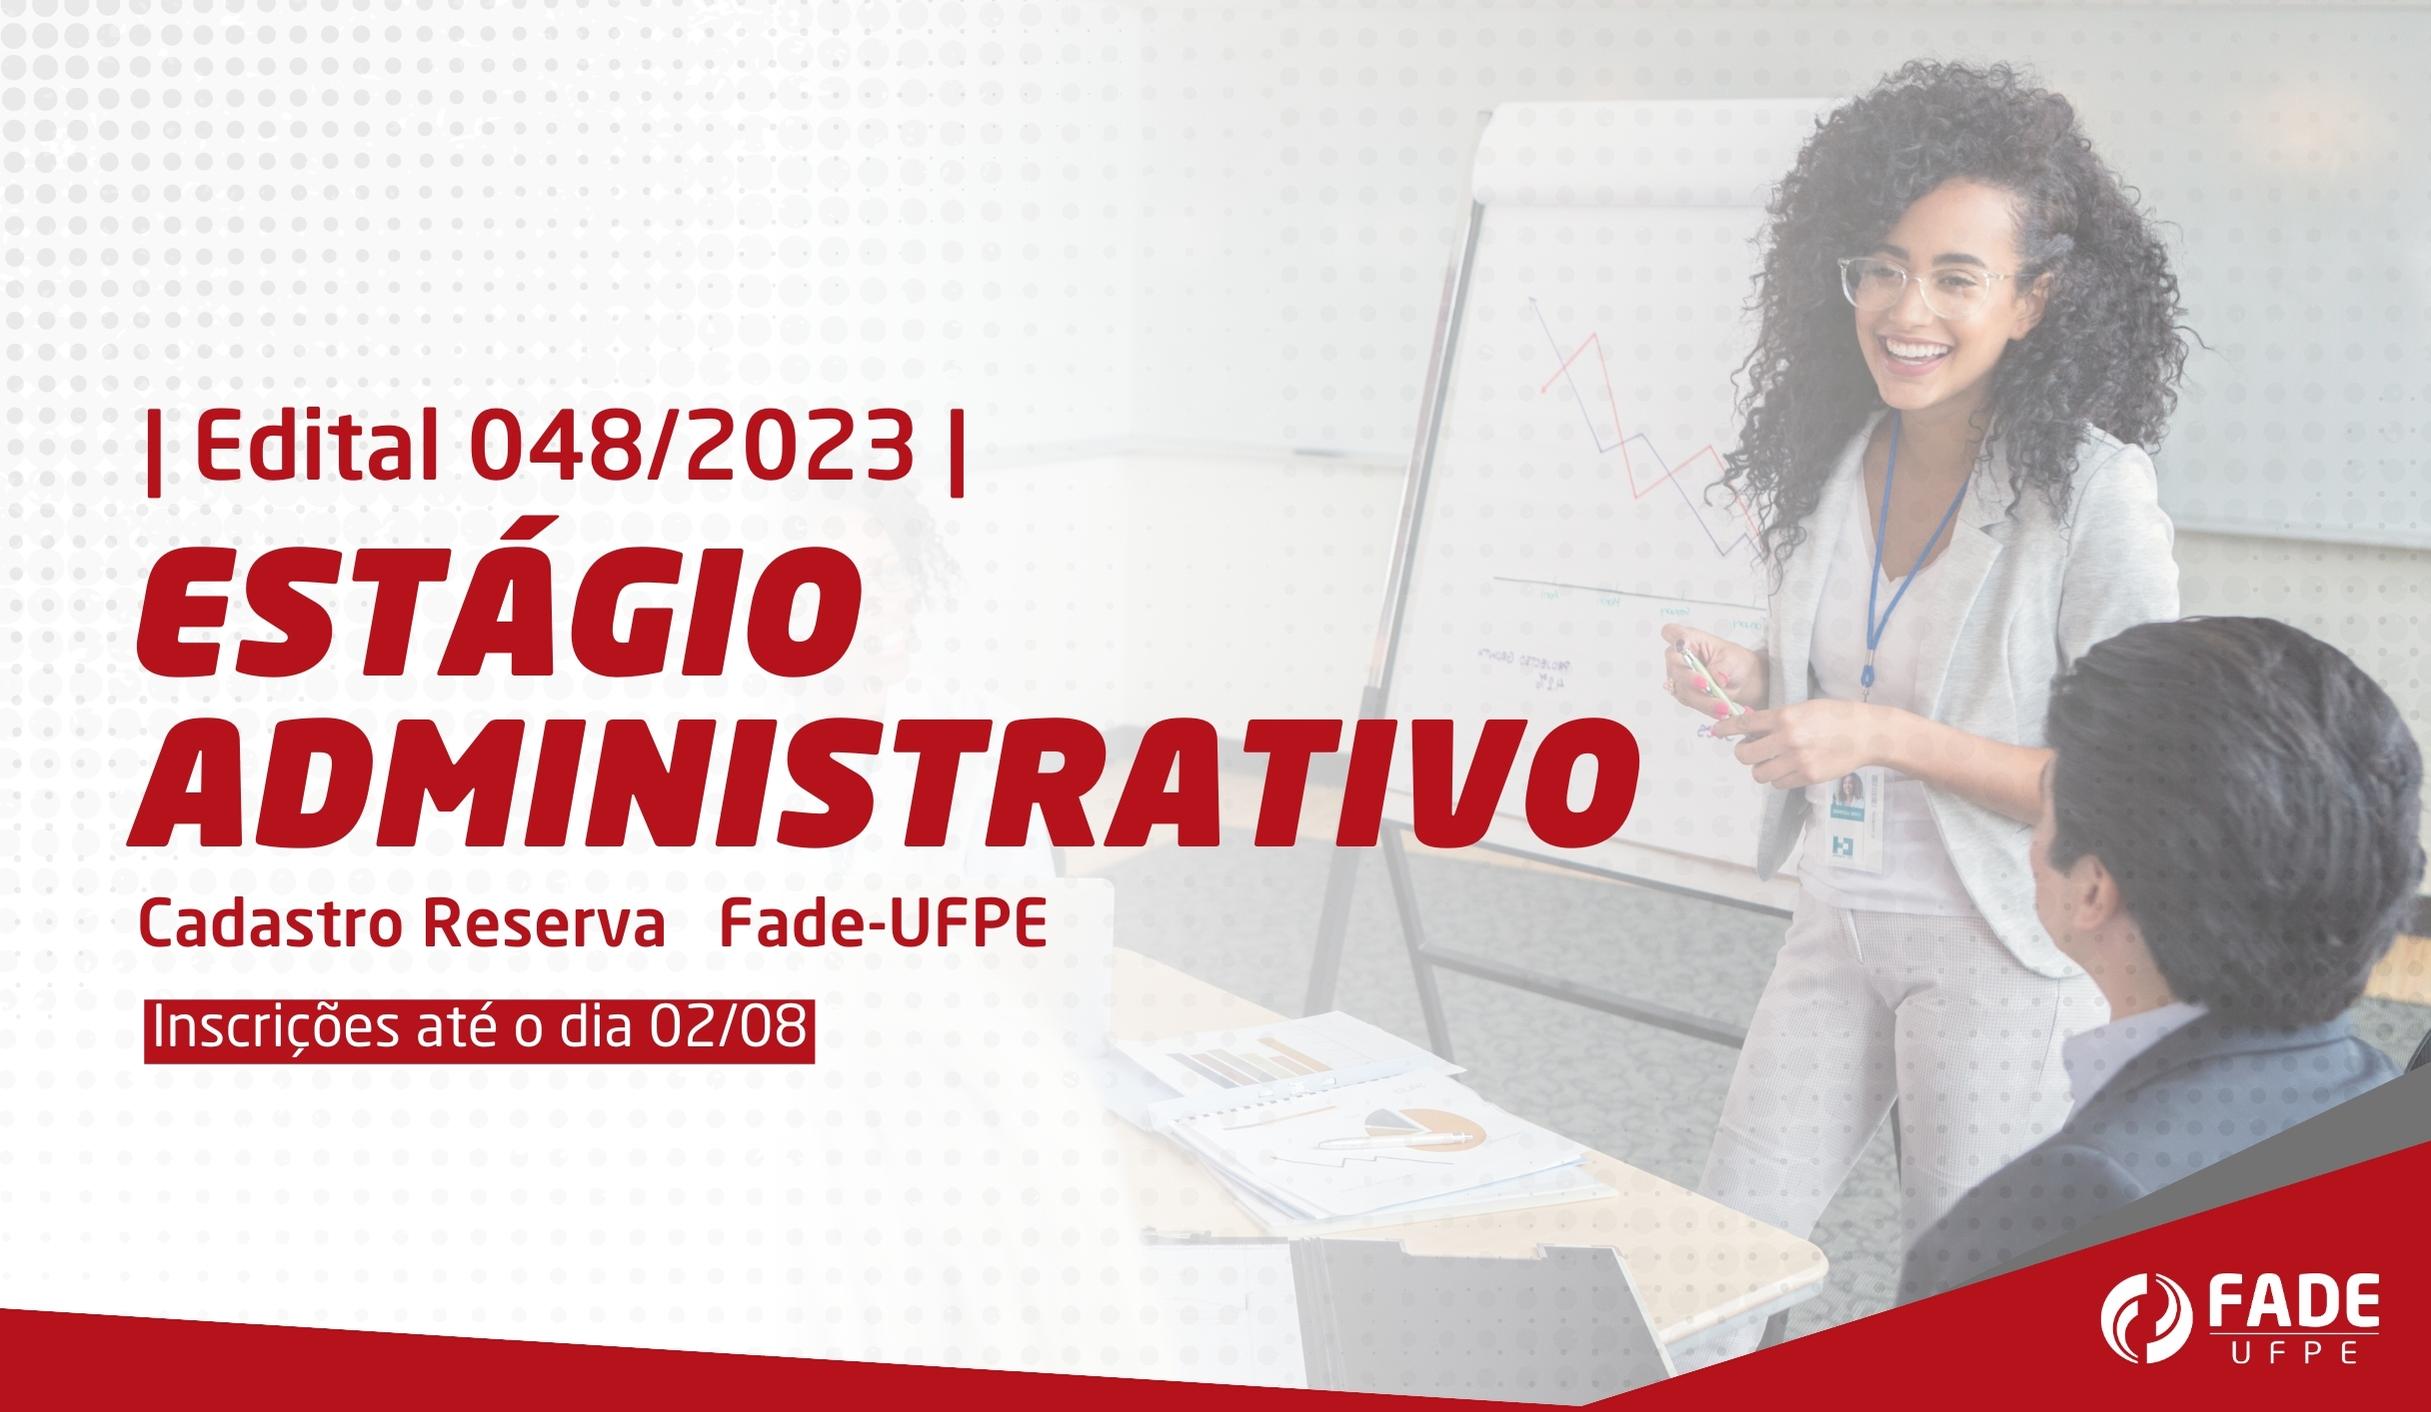 Estágio Administrativo | Cadastro Reserva | Edital 048/2023 | Fade-UFPE